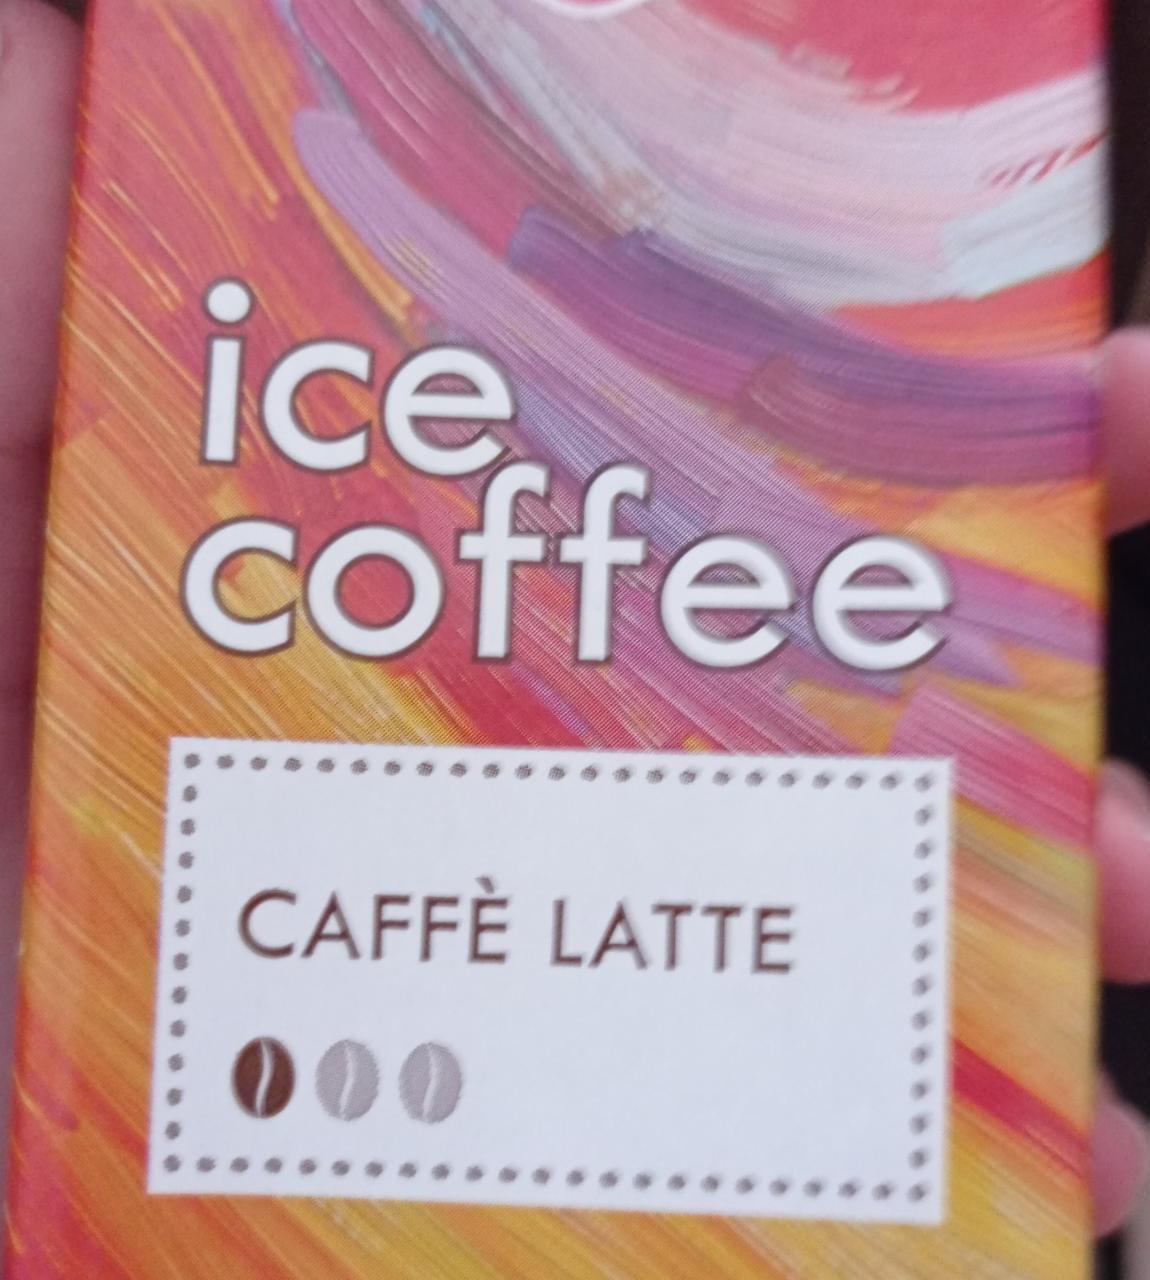 Képek - Jeges kávé Caffé latte Rajo